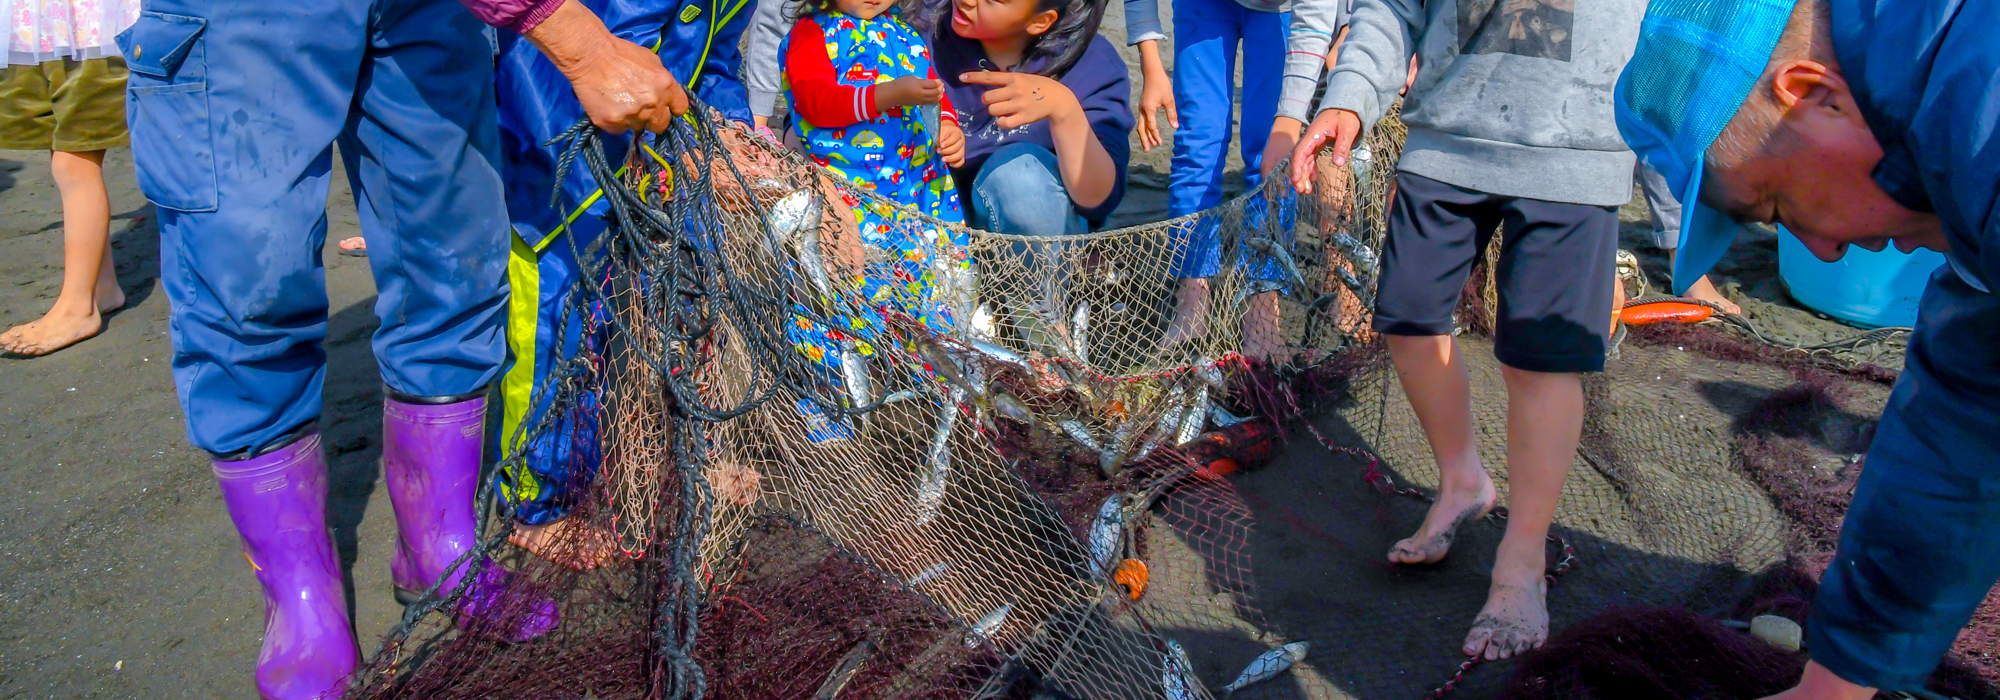 瀬戸内海の離島、小豆島の漁業体験は老若男女楽しめる。